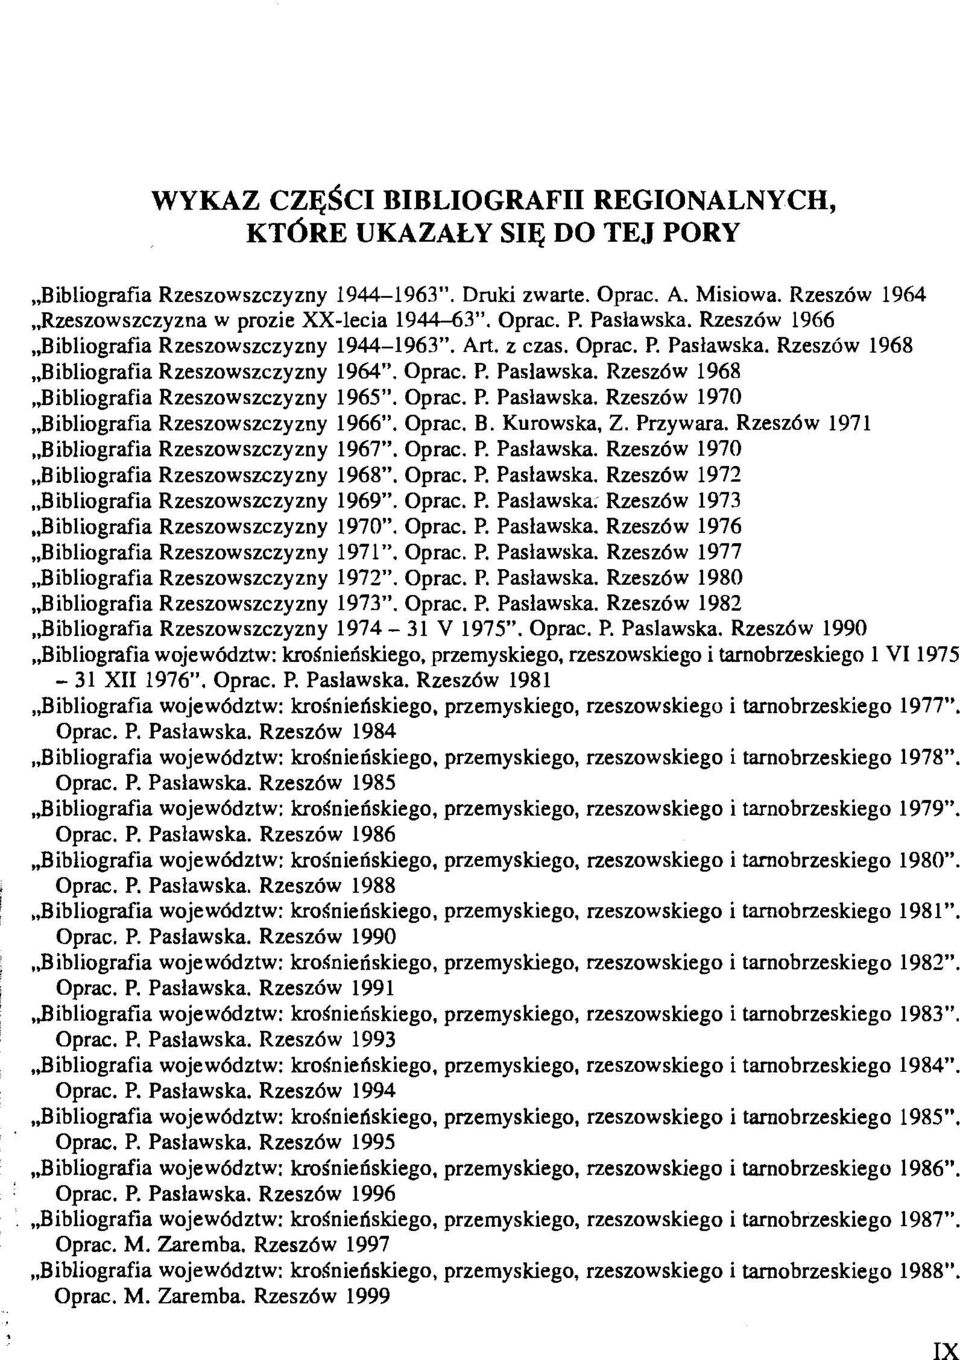 Oprac. P. Paslawska. Rzesz6w 1968,,Bibliografia Rzeszowszczyzny 1965". Oprac. P. Paslawska. Rzeszdw 1970,,Bibliografia Rzeszowszczyzny 1966". Oprac. B. Kurowska, Z. Przywara.